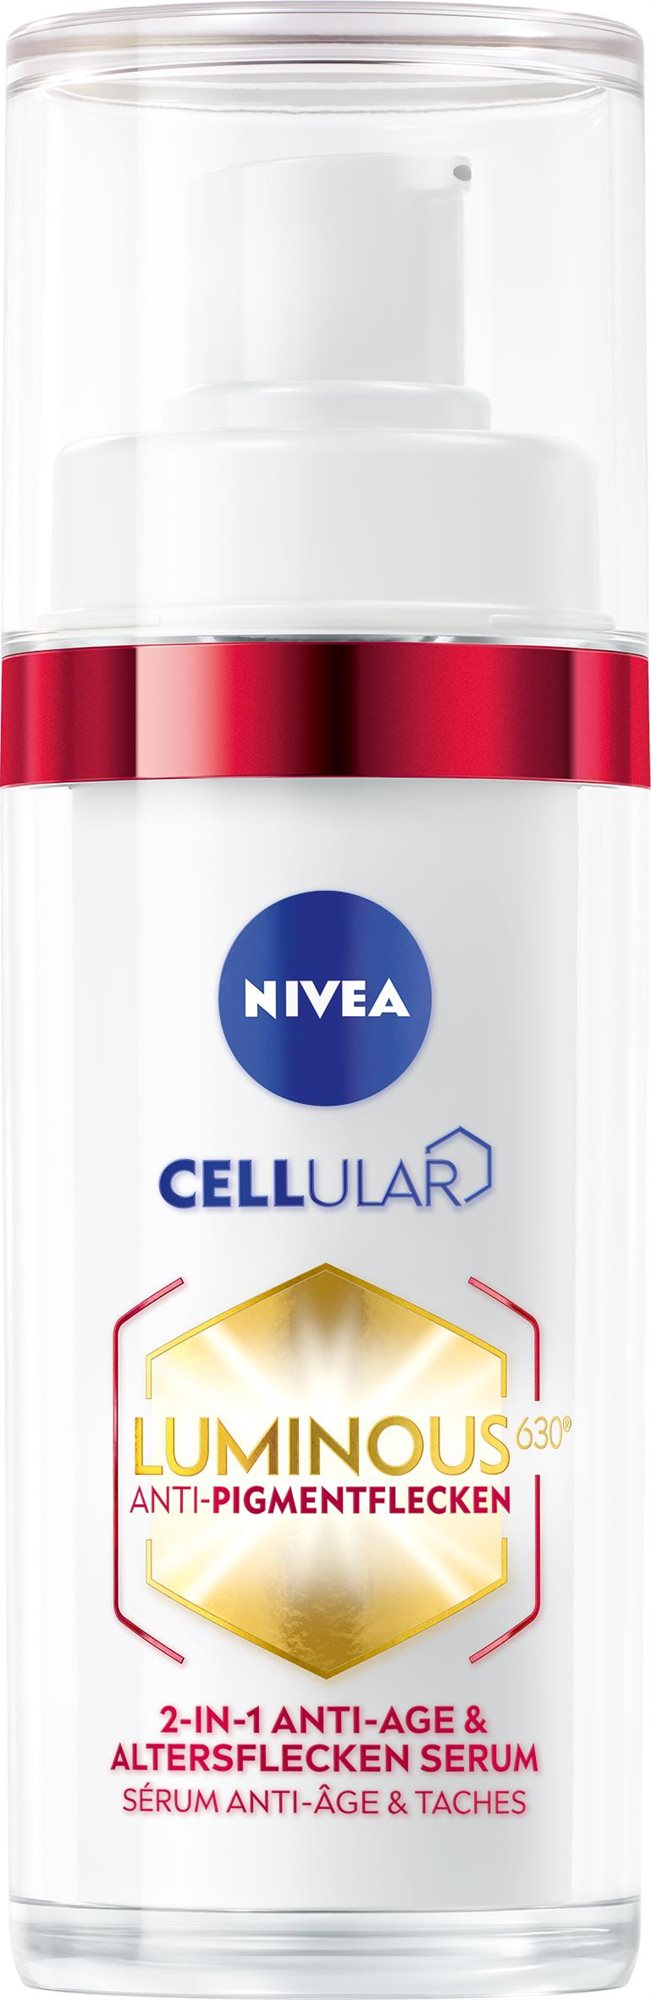 Arcápoló szérum NIVEA Cellular Luminous 630 pigmentfoltok ellen 30 ml